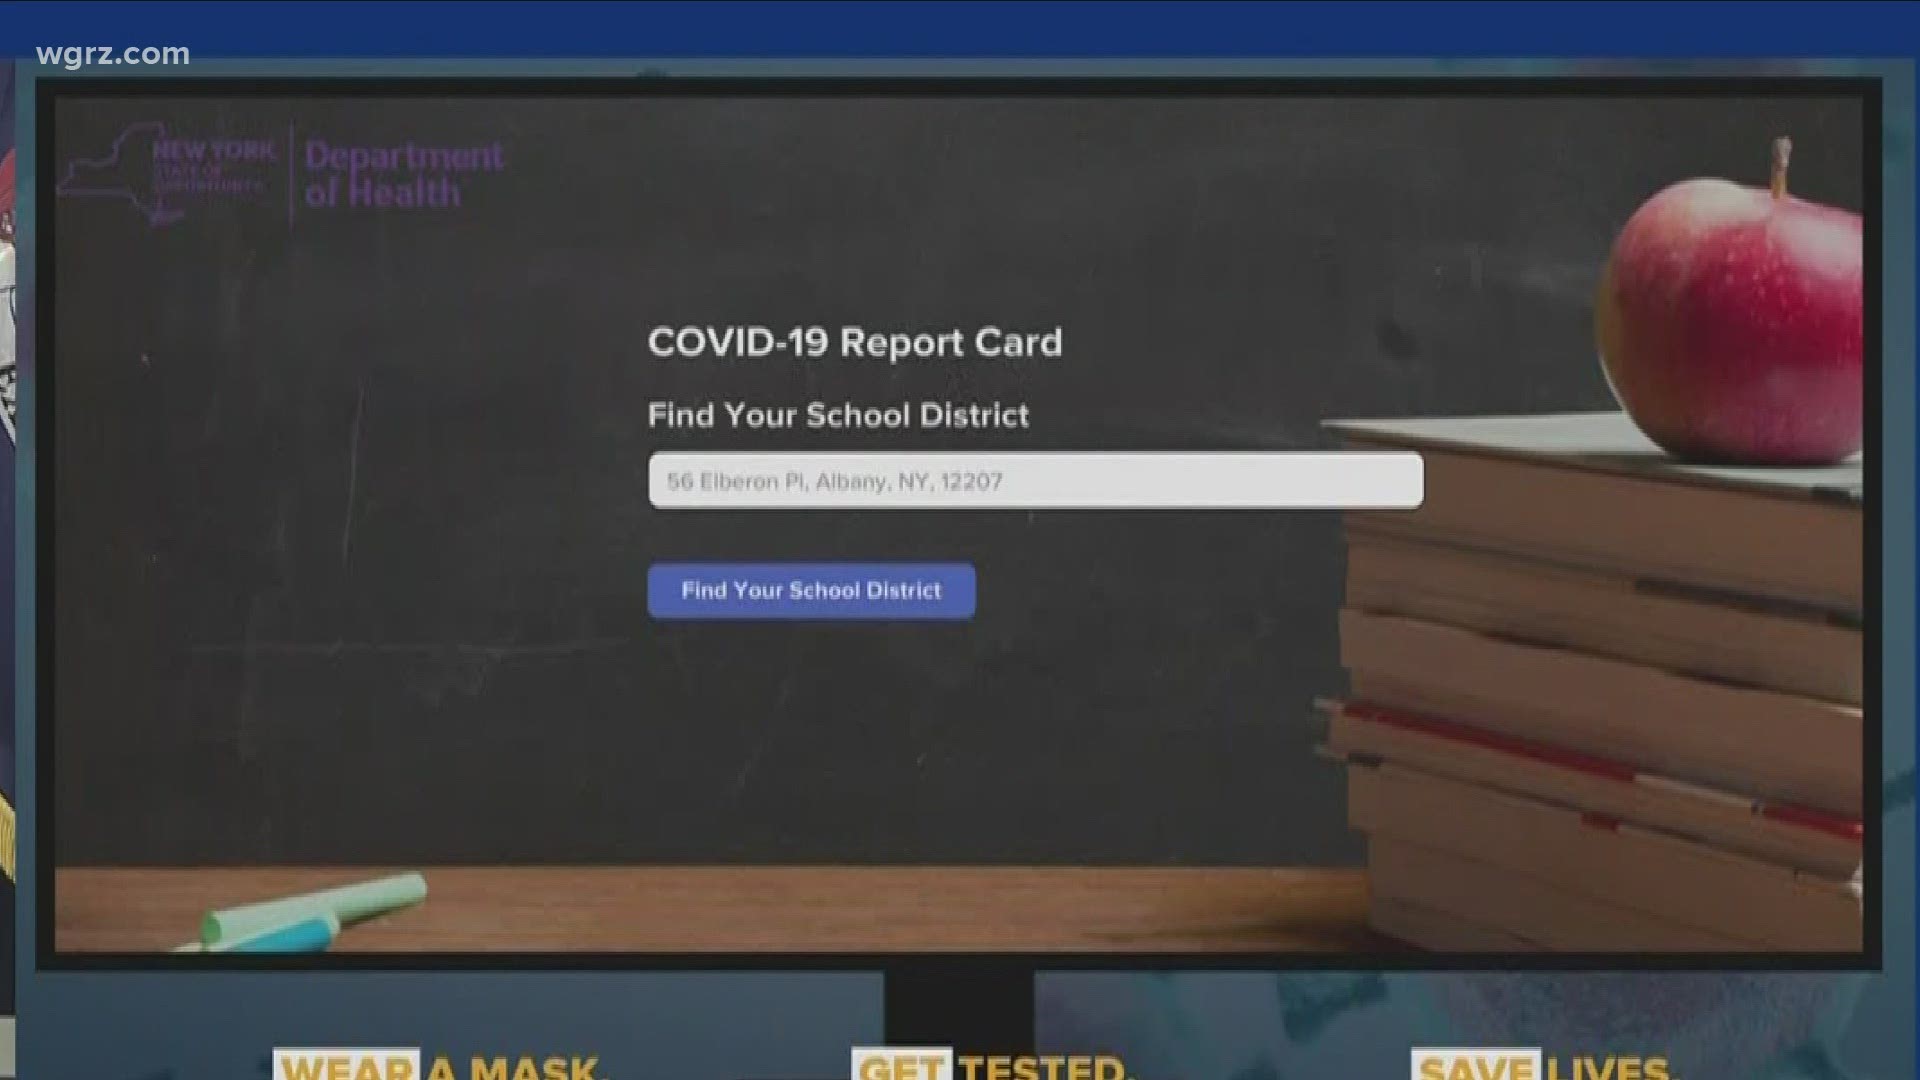 Covid 19 school report card update